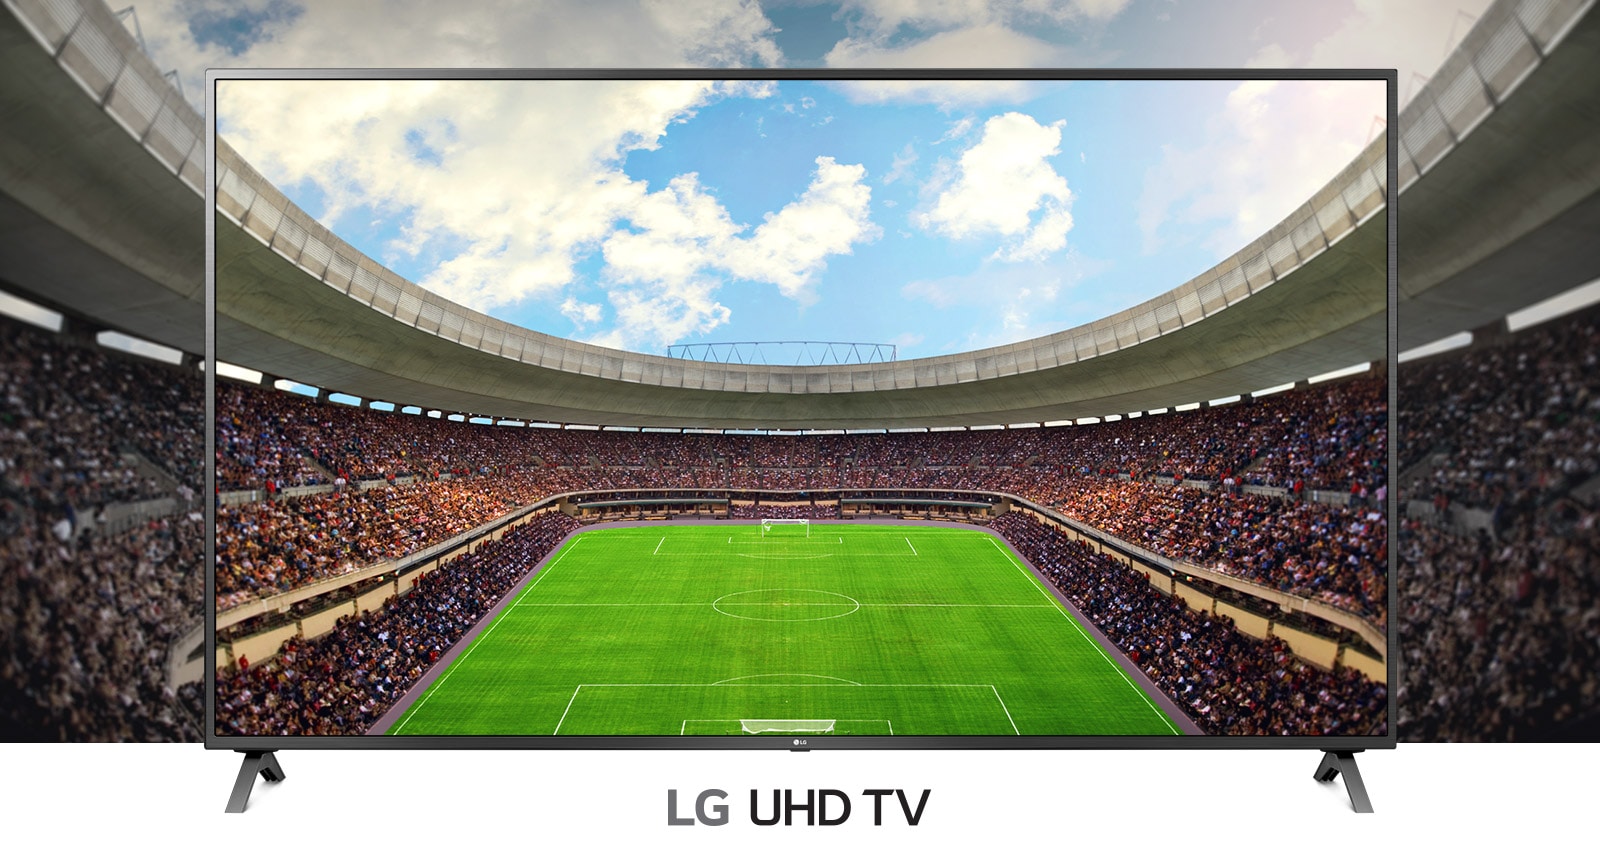 Televizorā redzams panorāmas skats uz skatītāju piepildītu futbola stadionu.